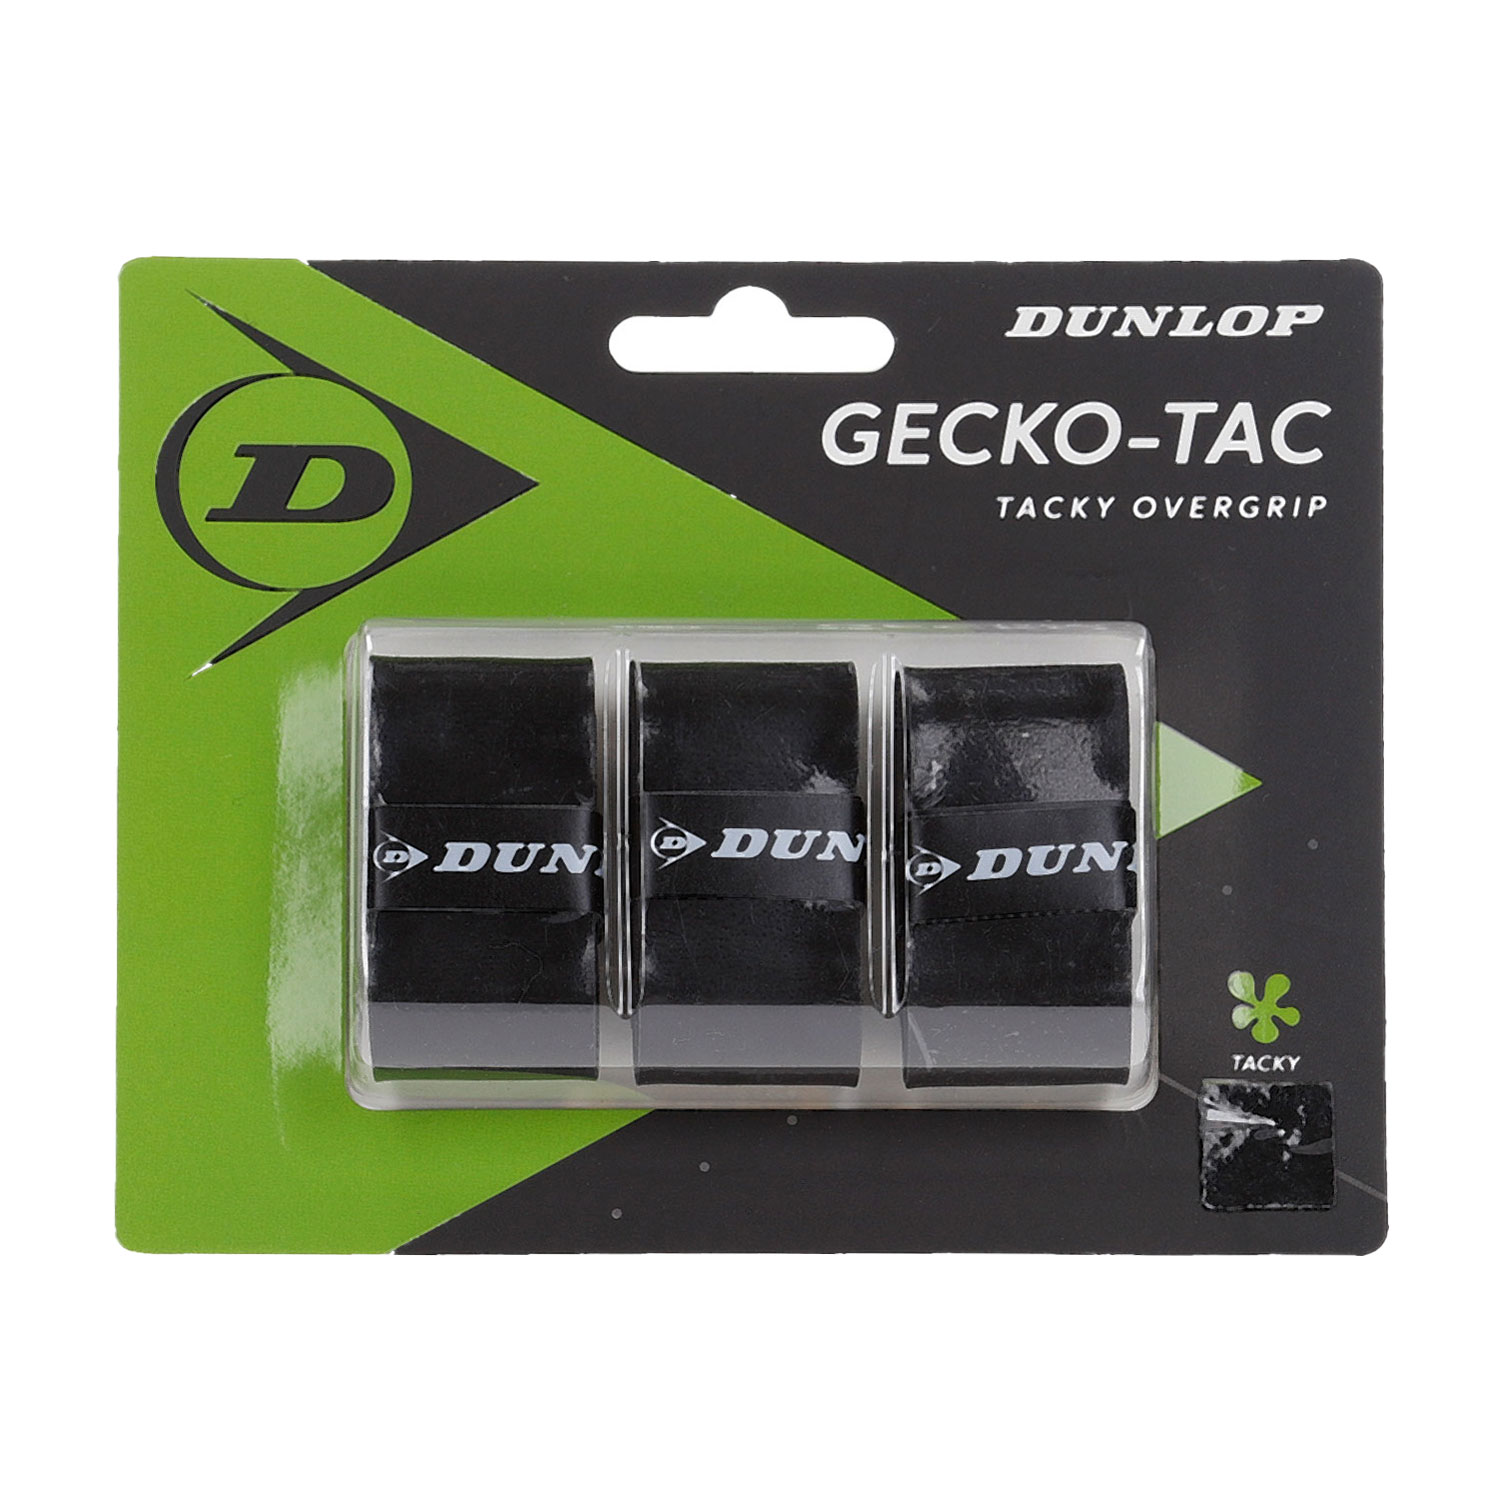 Dunlop Gecko-Tac Overgrip x 3 - Black